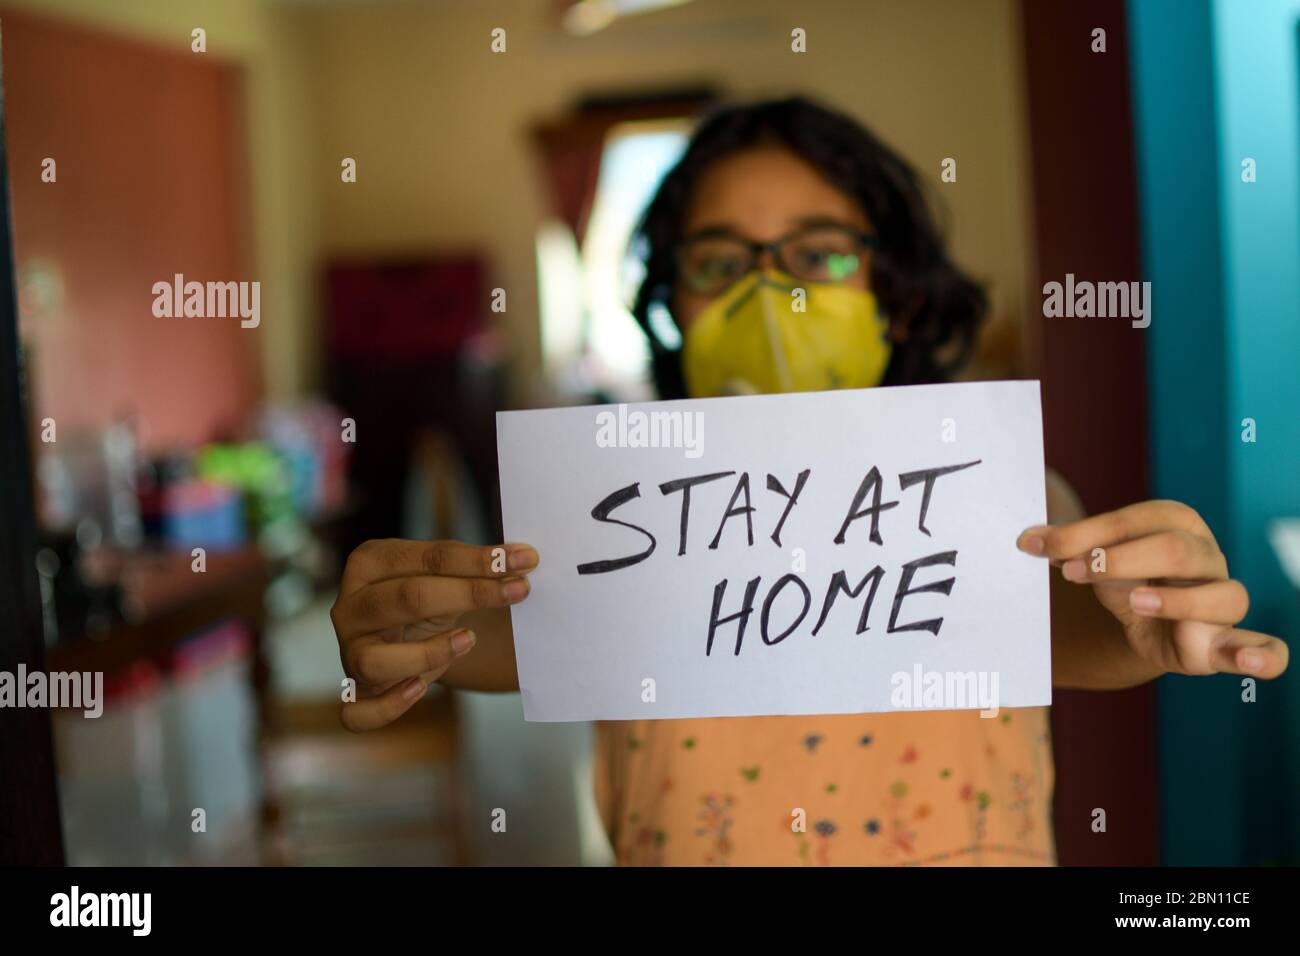 Kleines indisches Mädchen mit Gesichtsmaske hält ein Plakat in den Händen und zeigt eine Botschaft "Stay at Home" während der COVID-19 Pandemie, um soziale Distanz zu erhalten. Stockfoto